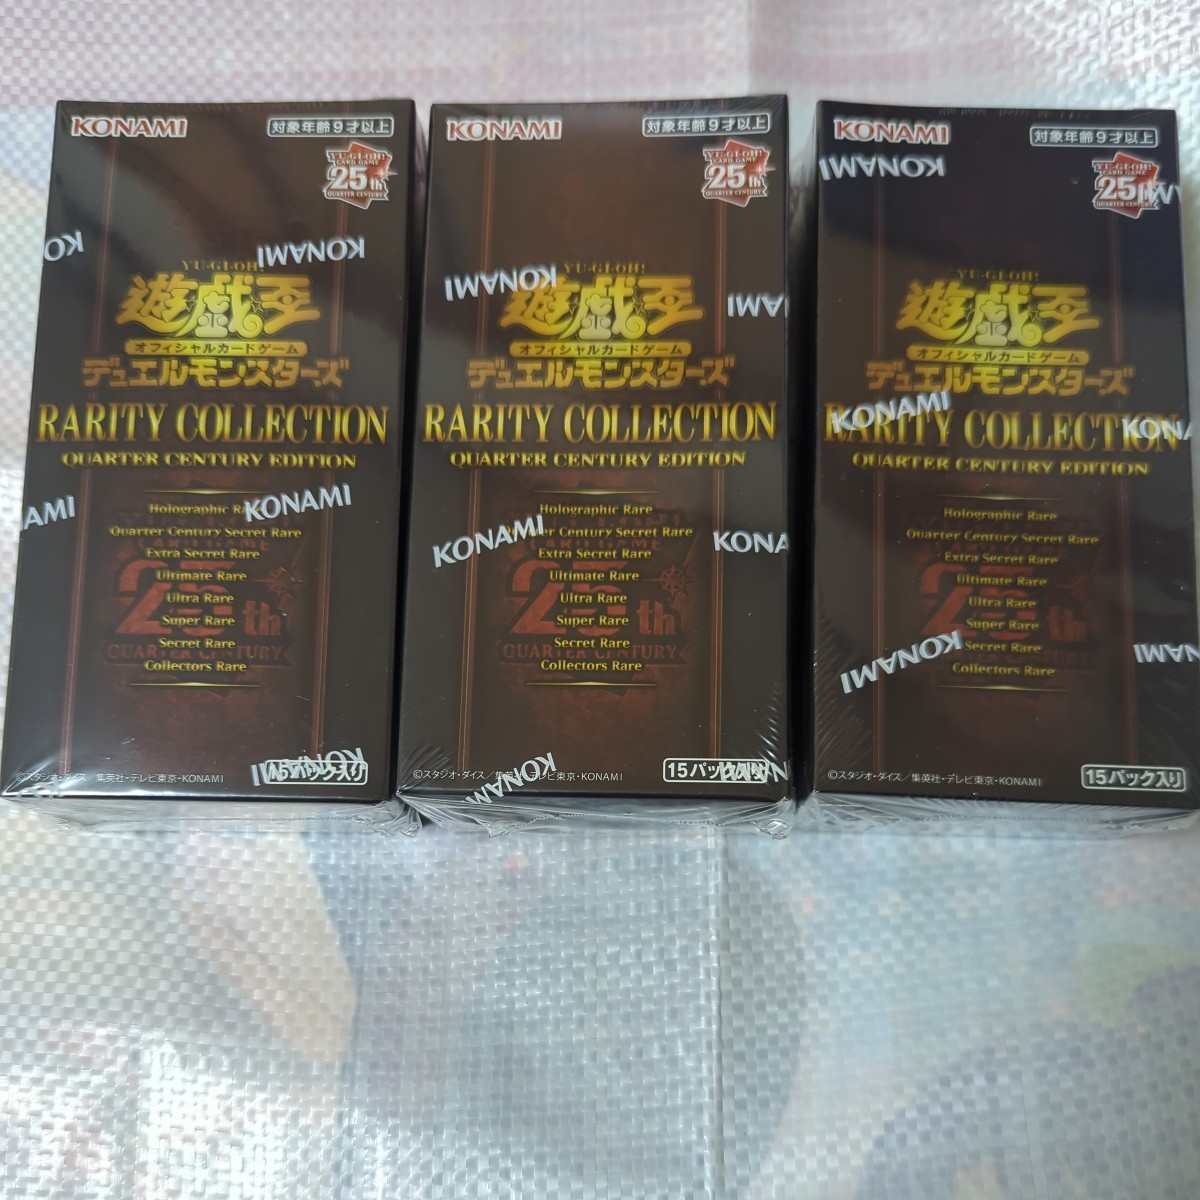 遊戯王 RARITY COLLECTION QUARTER CENTURY EDITION 3BOX カード 3BOXセット 遊戯王カード 未開封 シュリンク付きの画像1